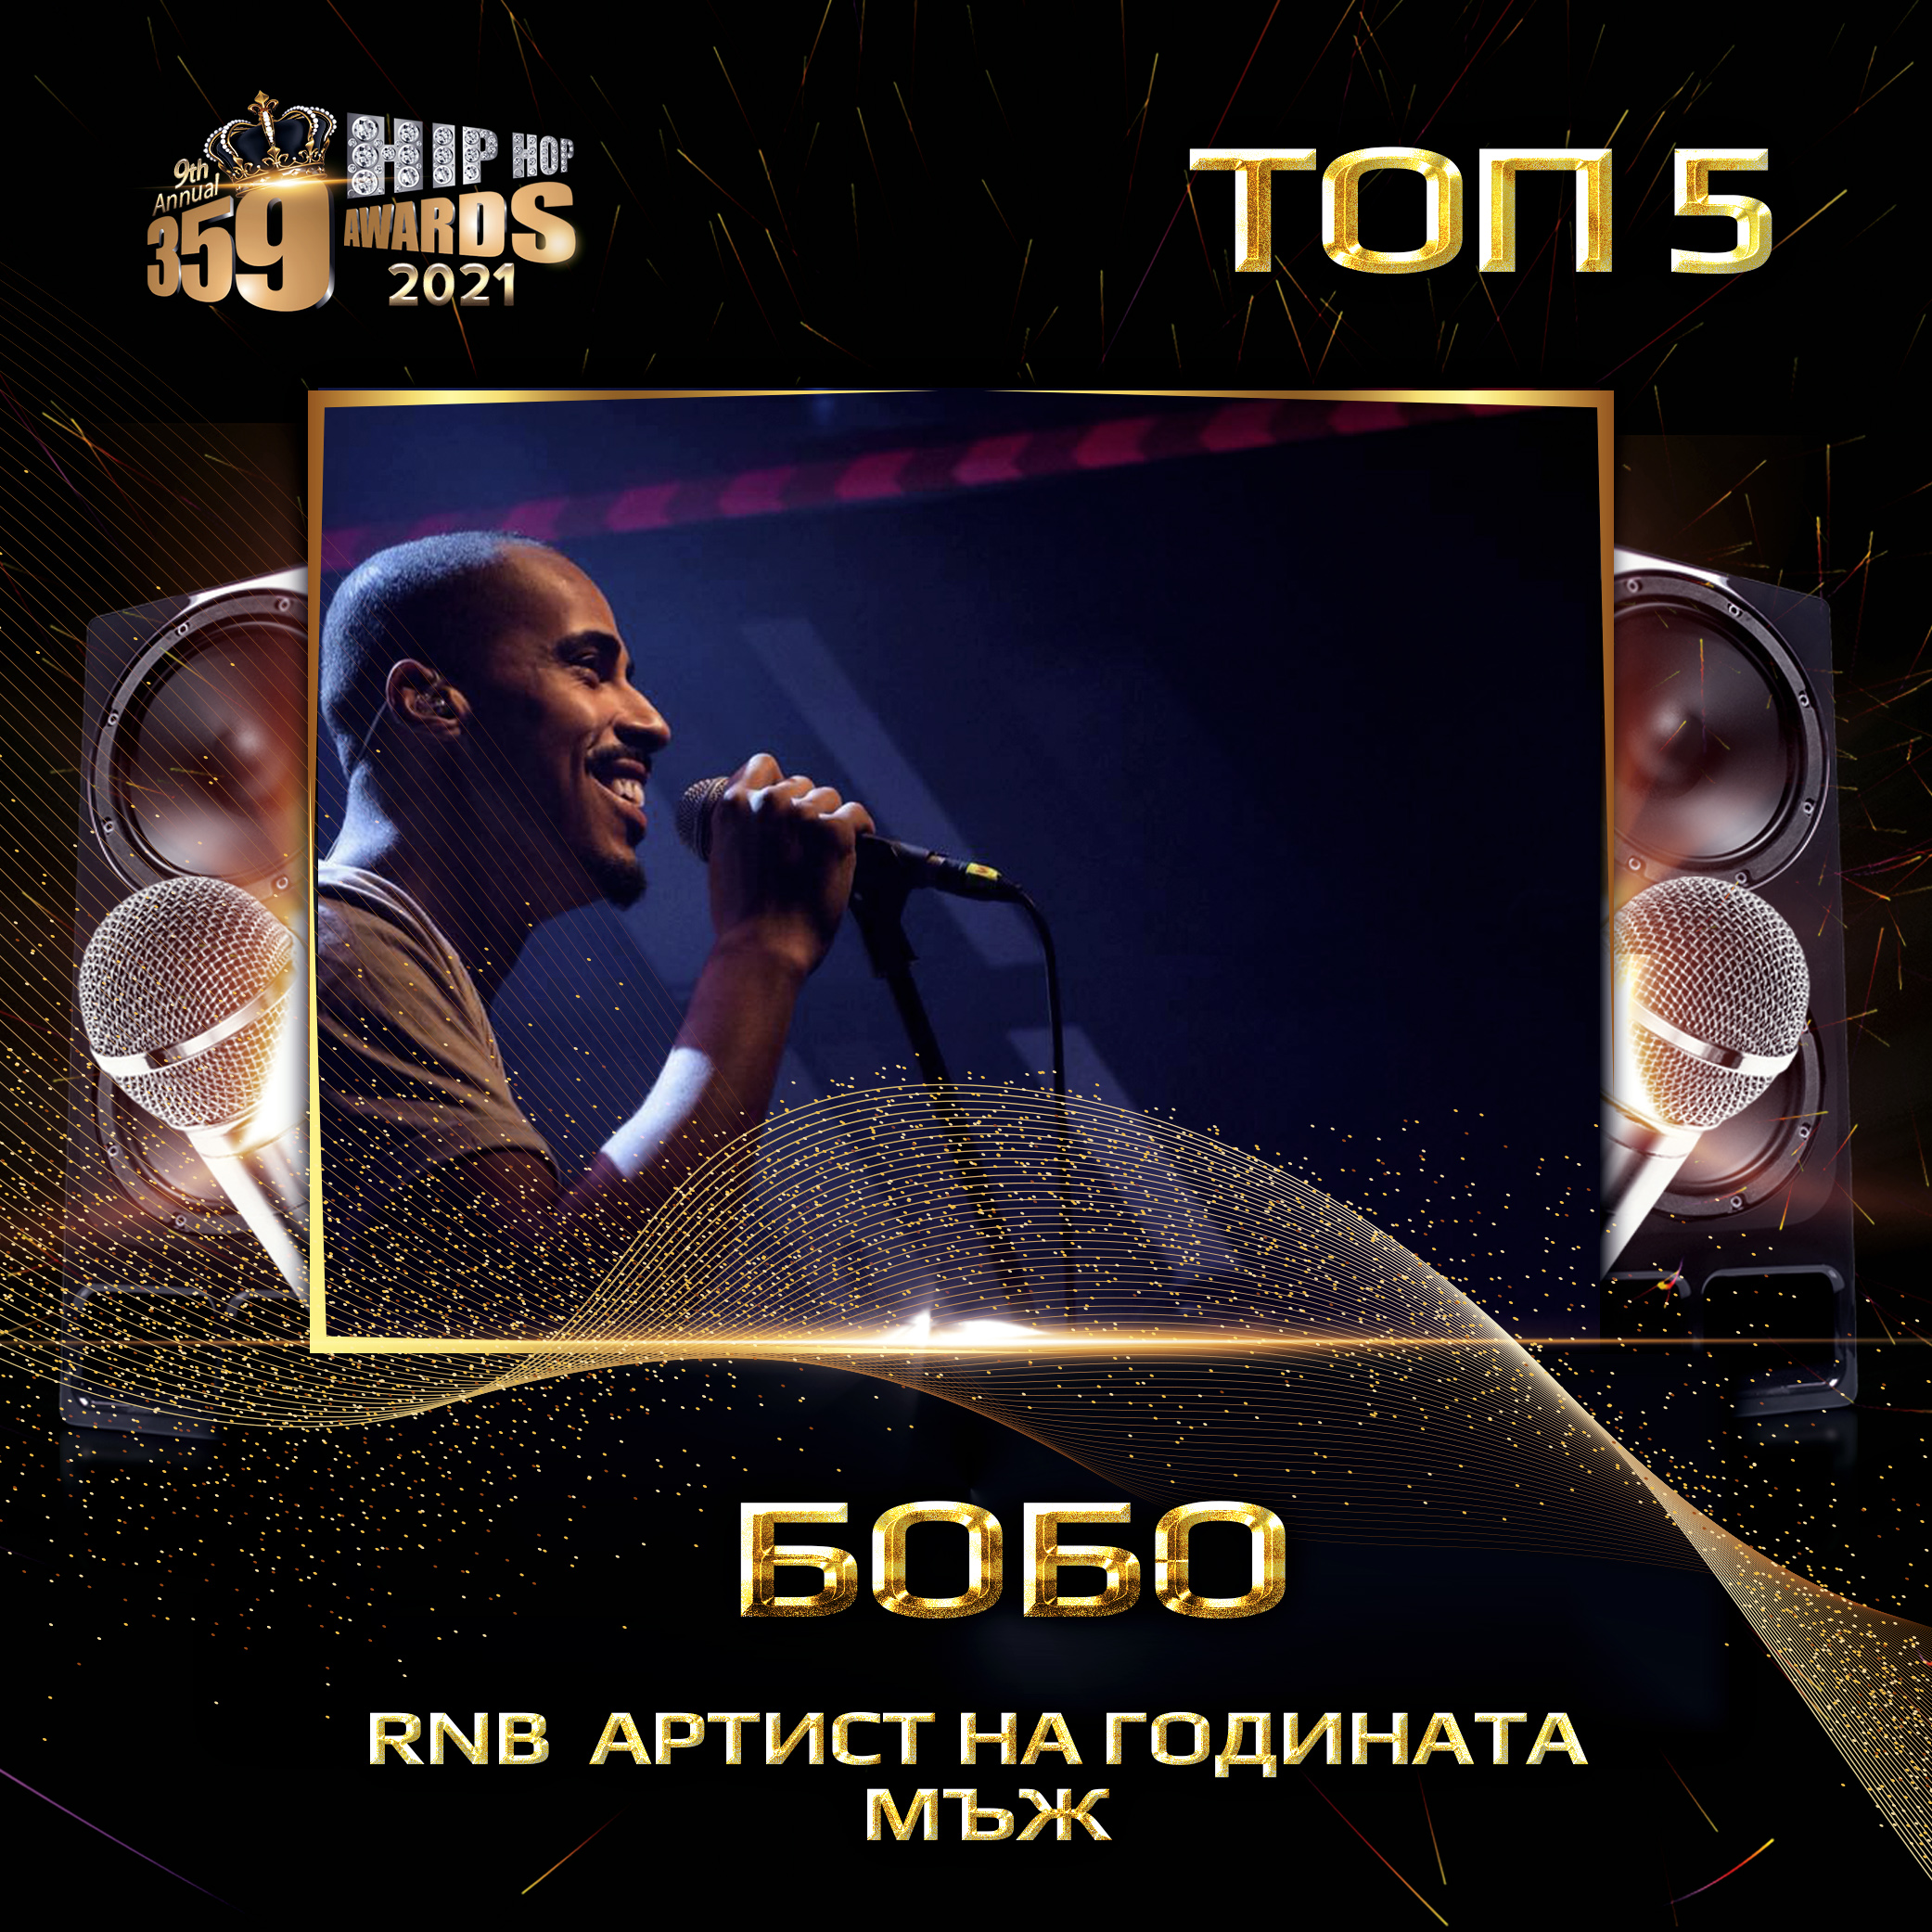 top 5  359 awards 2021 rnb men  bobo - Най-добър RNB артист 2020 / Мъж